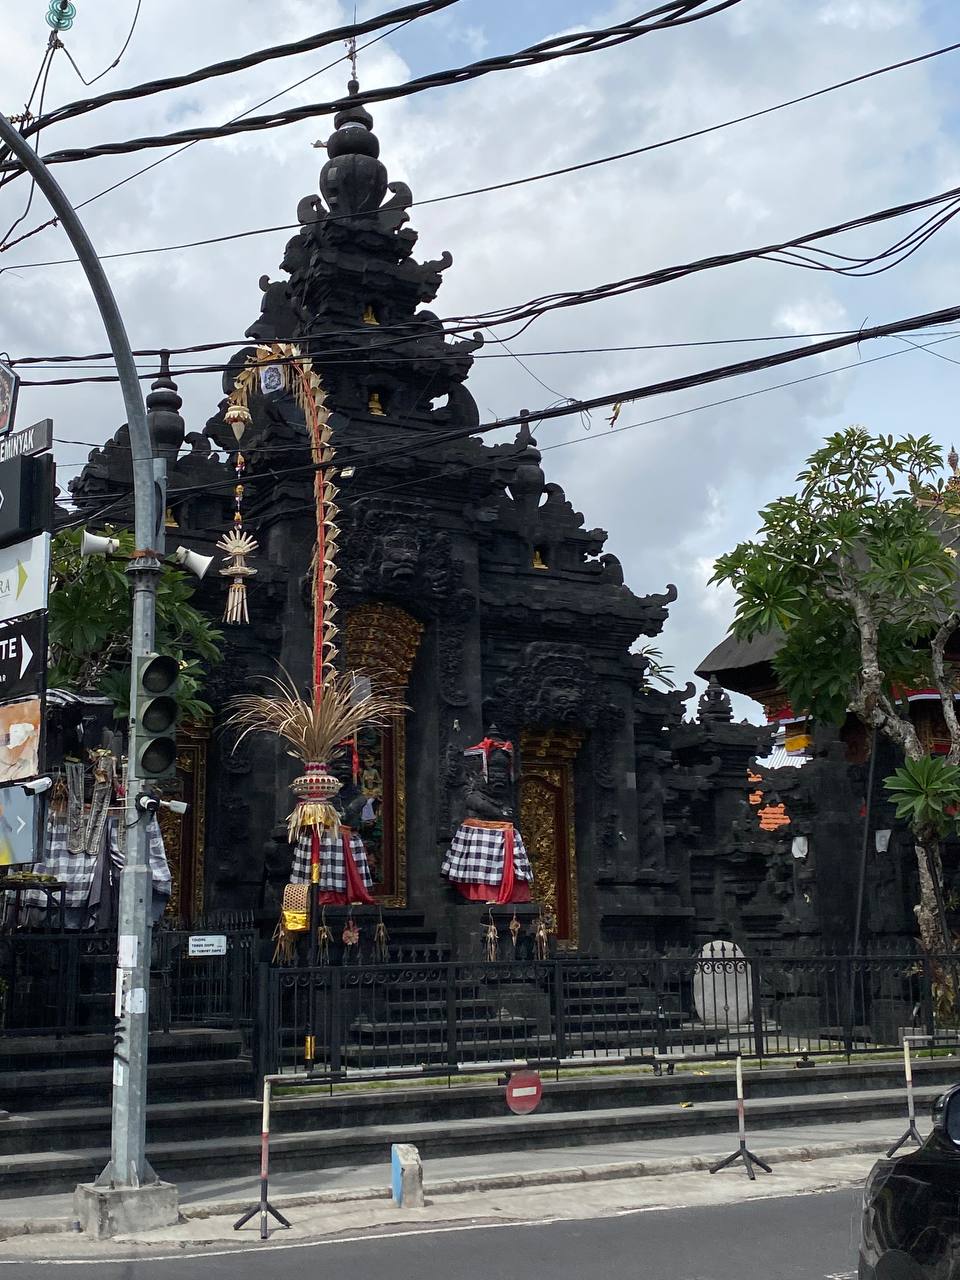 Балийский храм, а перед ним пенджор (penjor), установленный к празднику и символизирующий местную гору Агунг